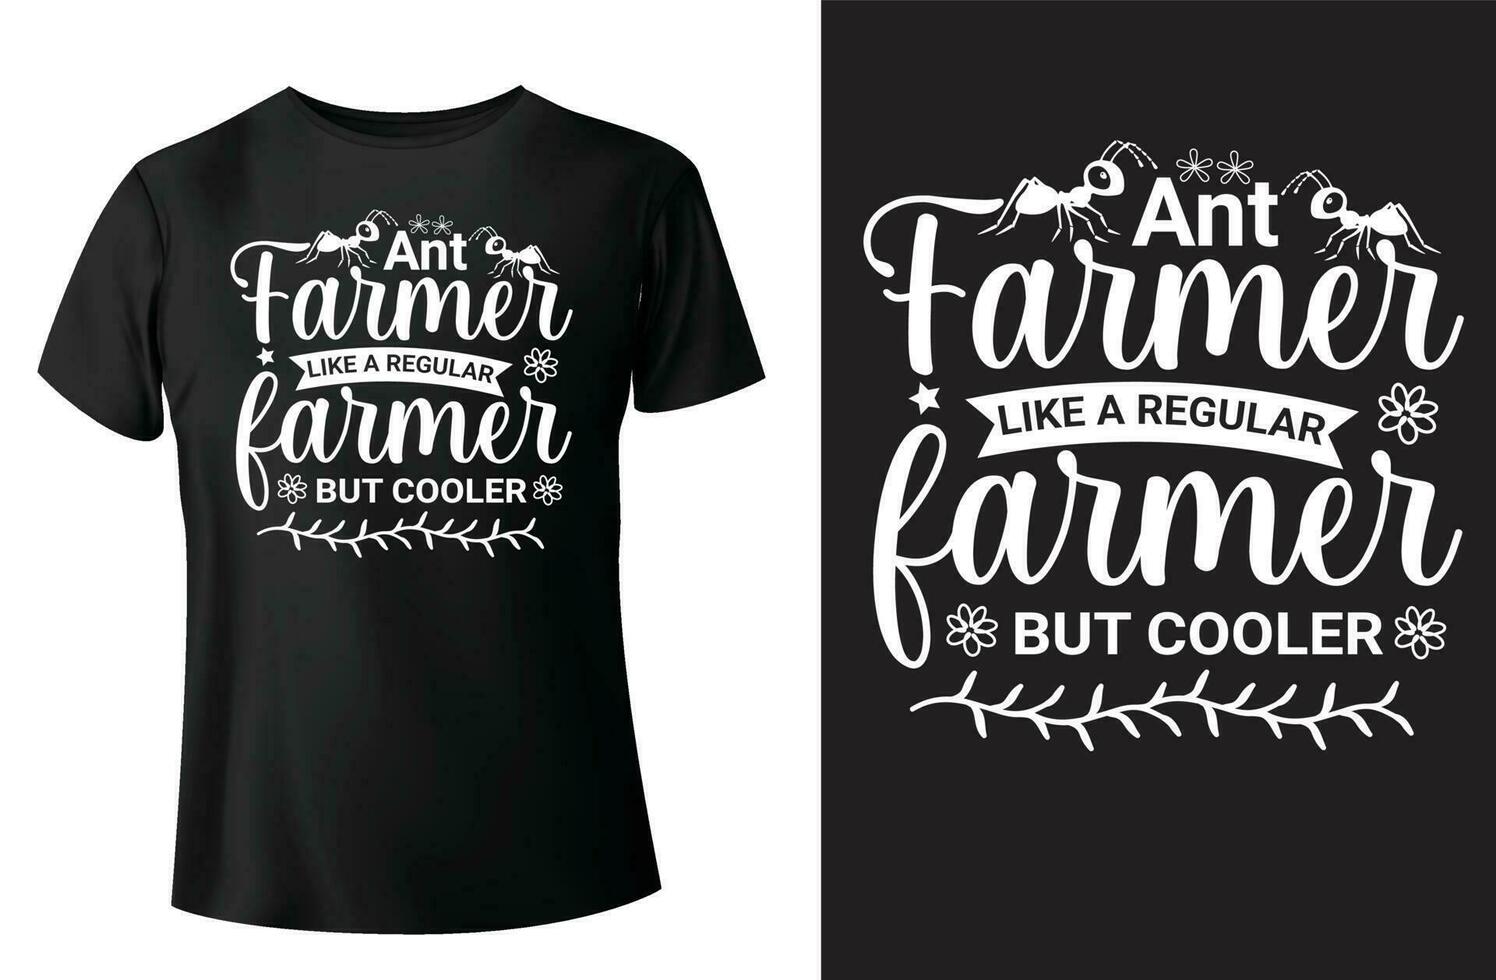 myra jordbrukare tycka om en regelbunden jordbrukare men kylare t-shirt design och vektor-mall vektor